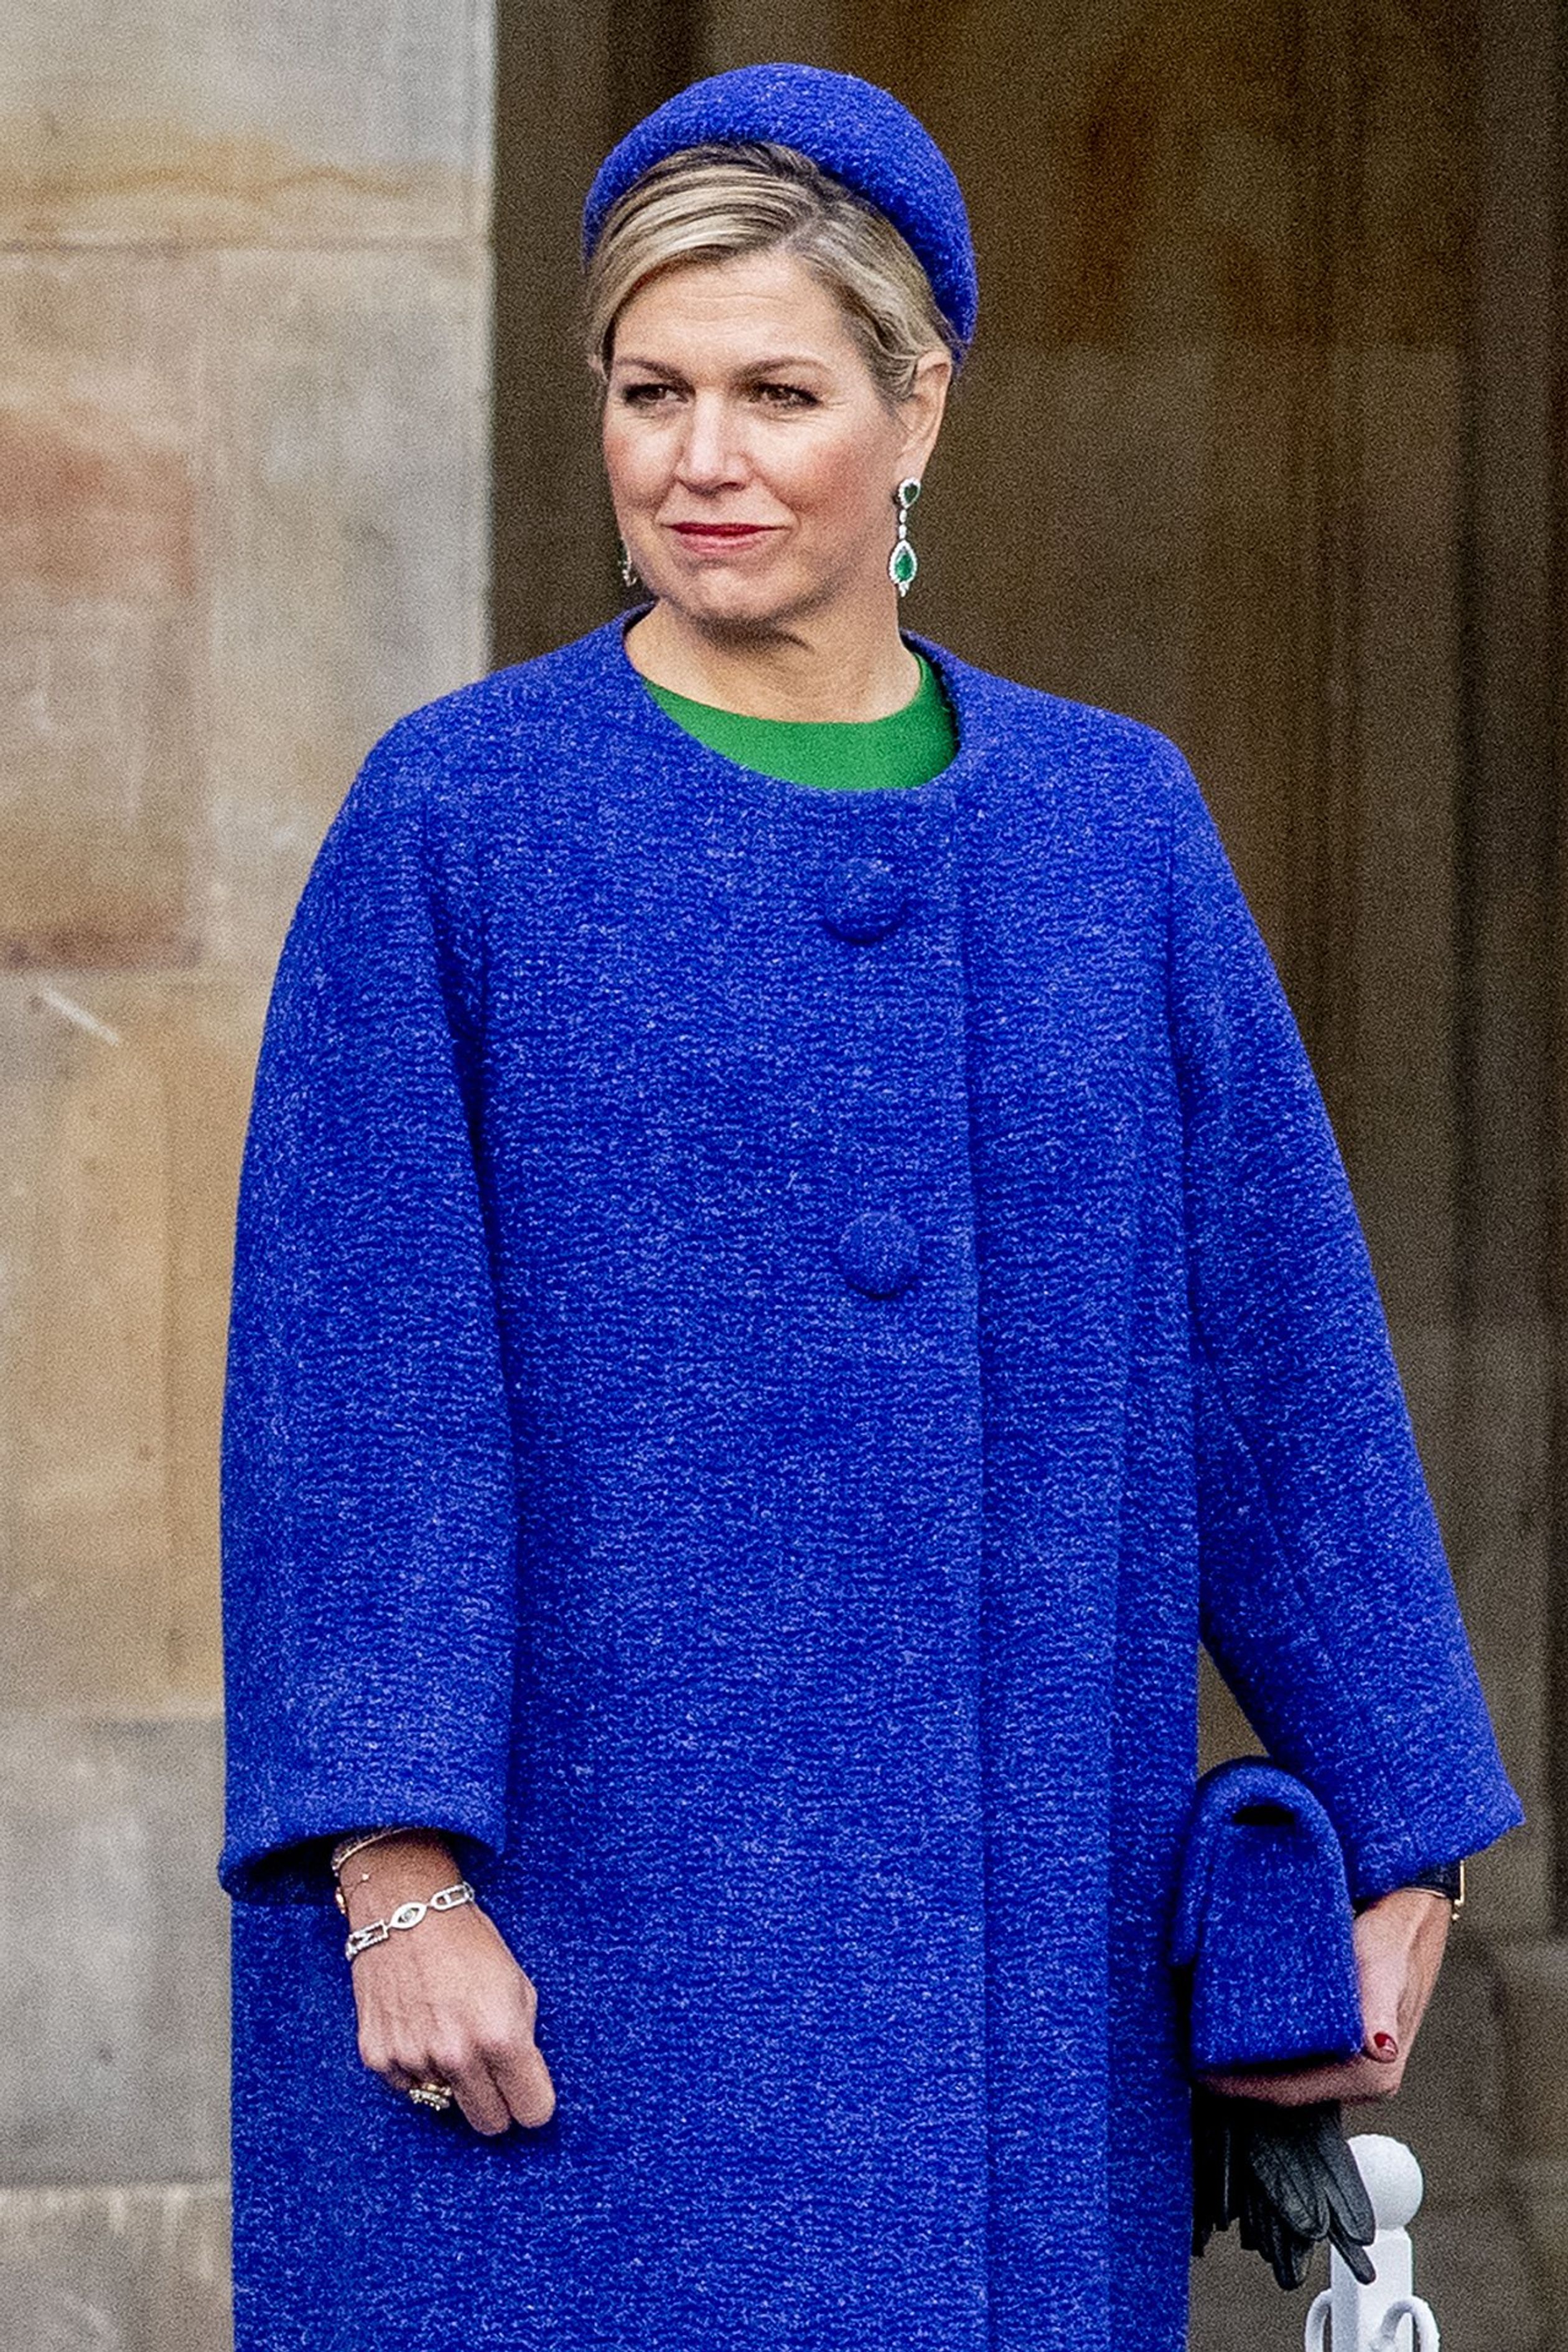 We sluiten af met een prachtige kleurrijke foto van koningin Máxima in een blauwe wollen mantel